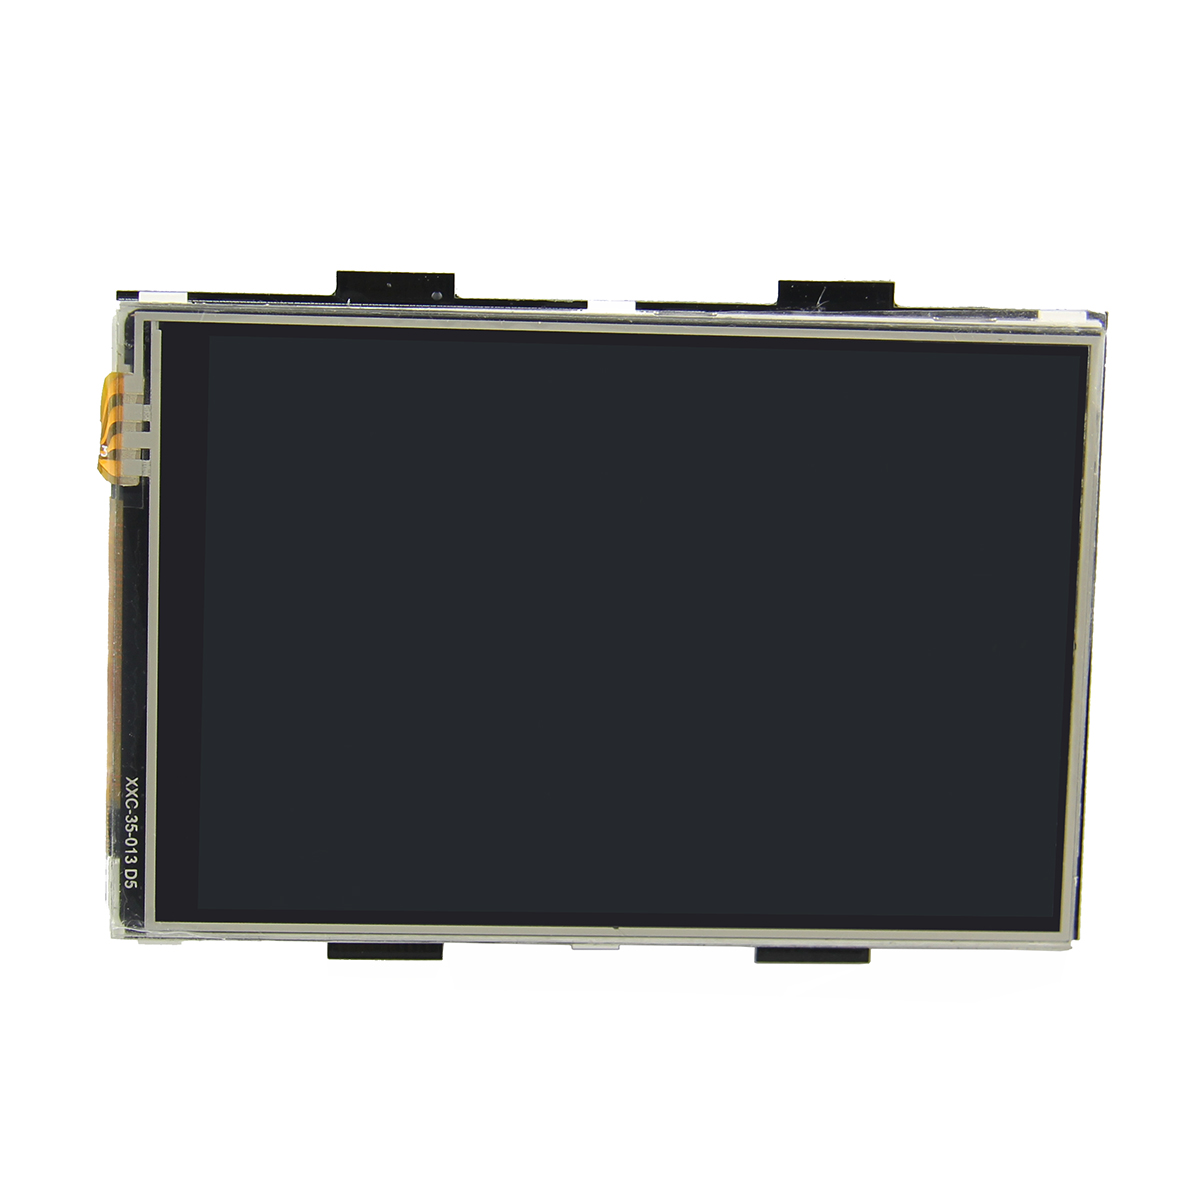 

3.5 дюйма 320 х 480 TFT ЖК-дисплей сенсорная доска для Raspberry пи 2/Б+